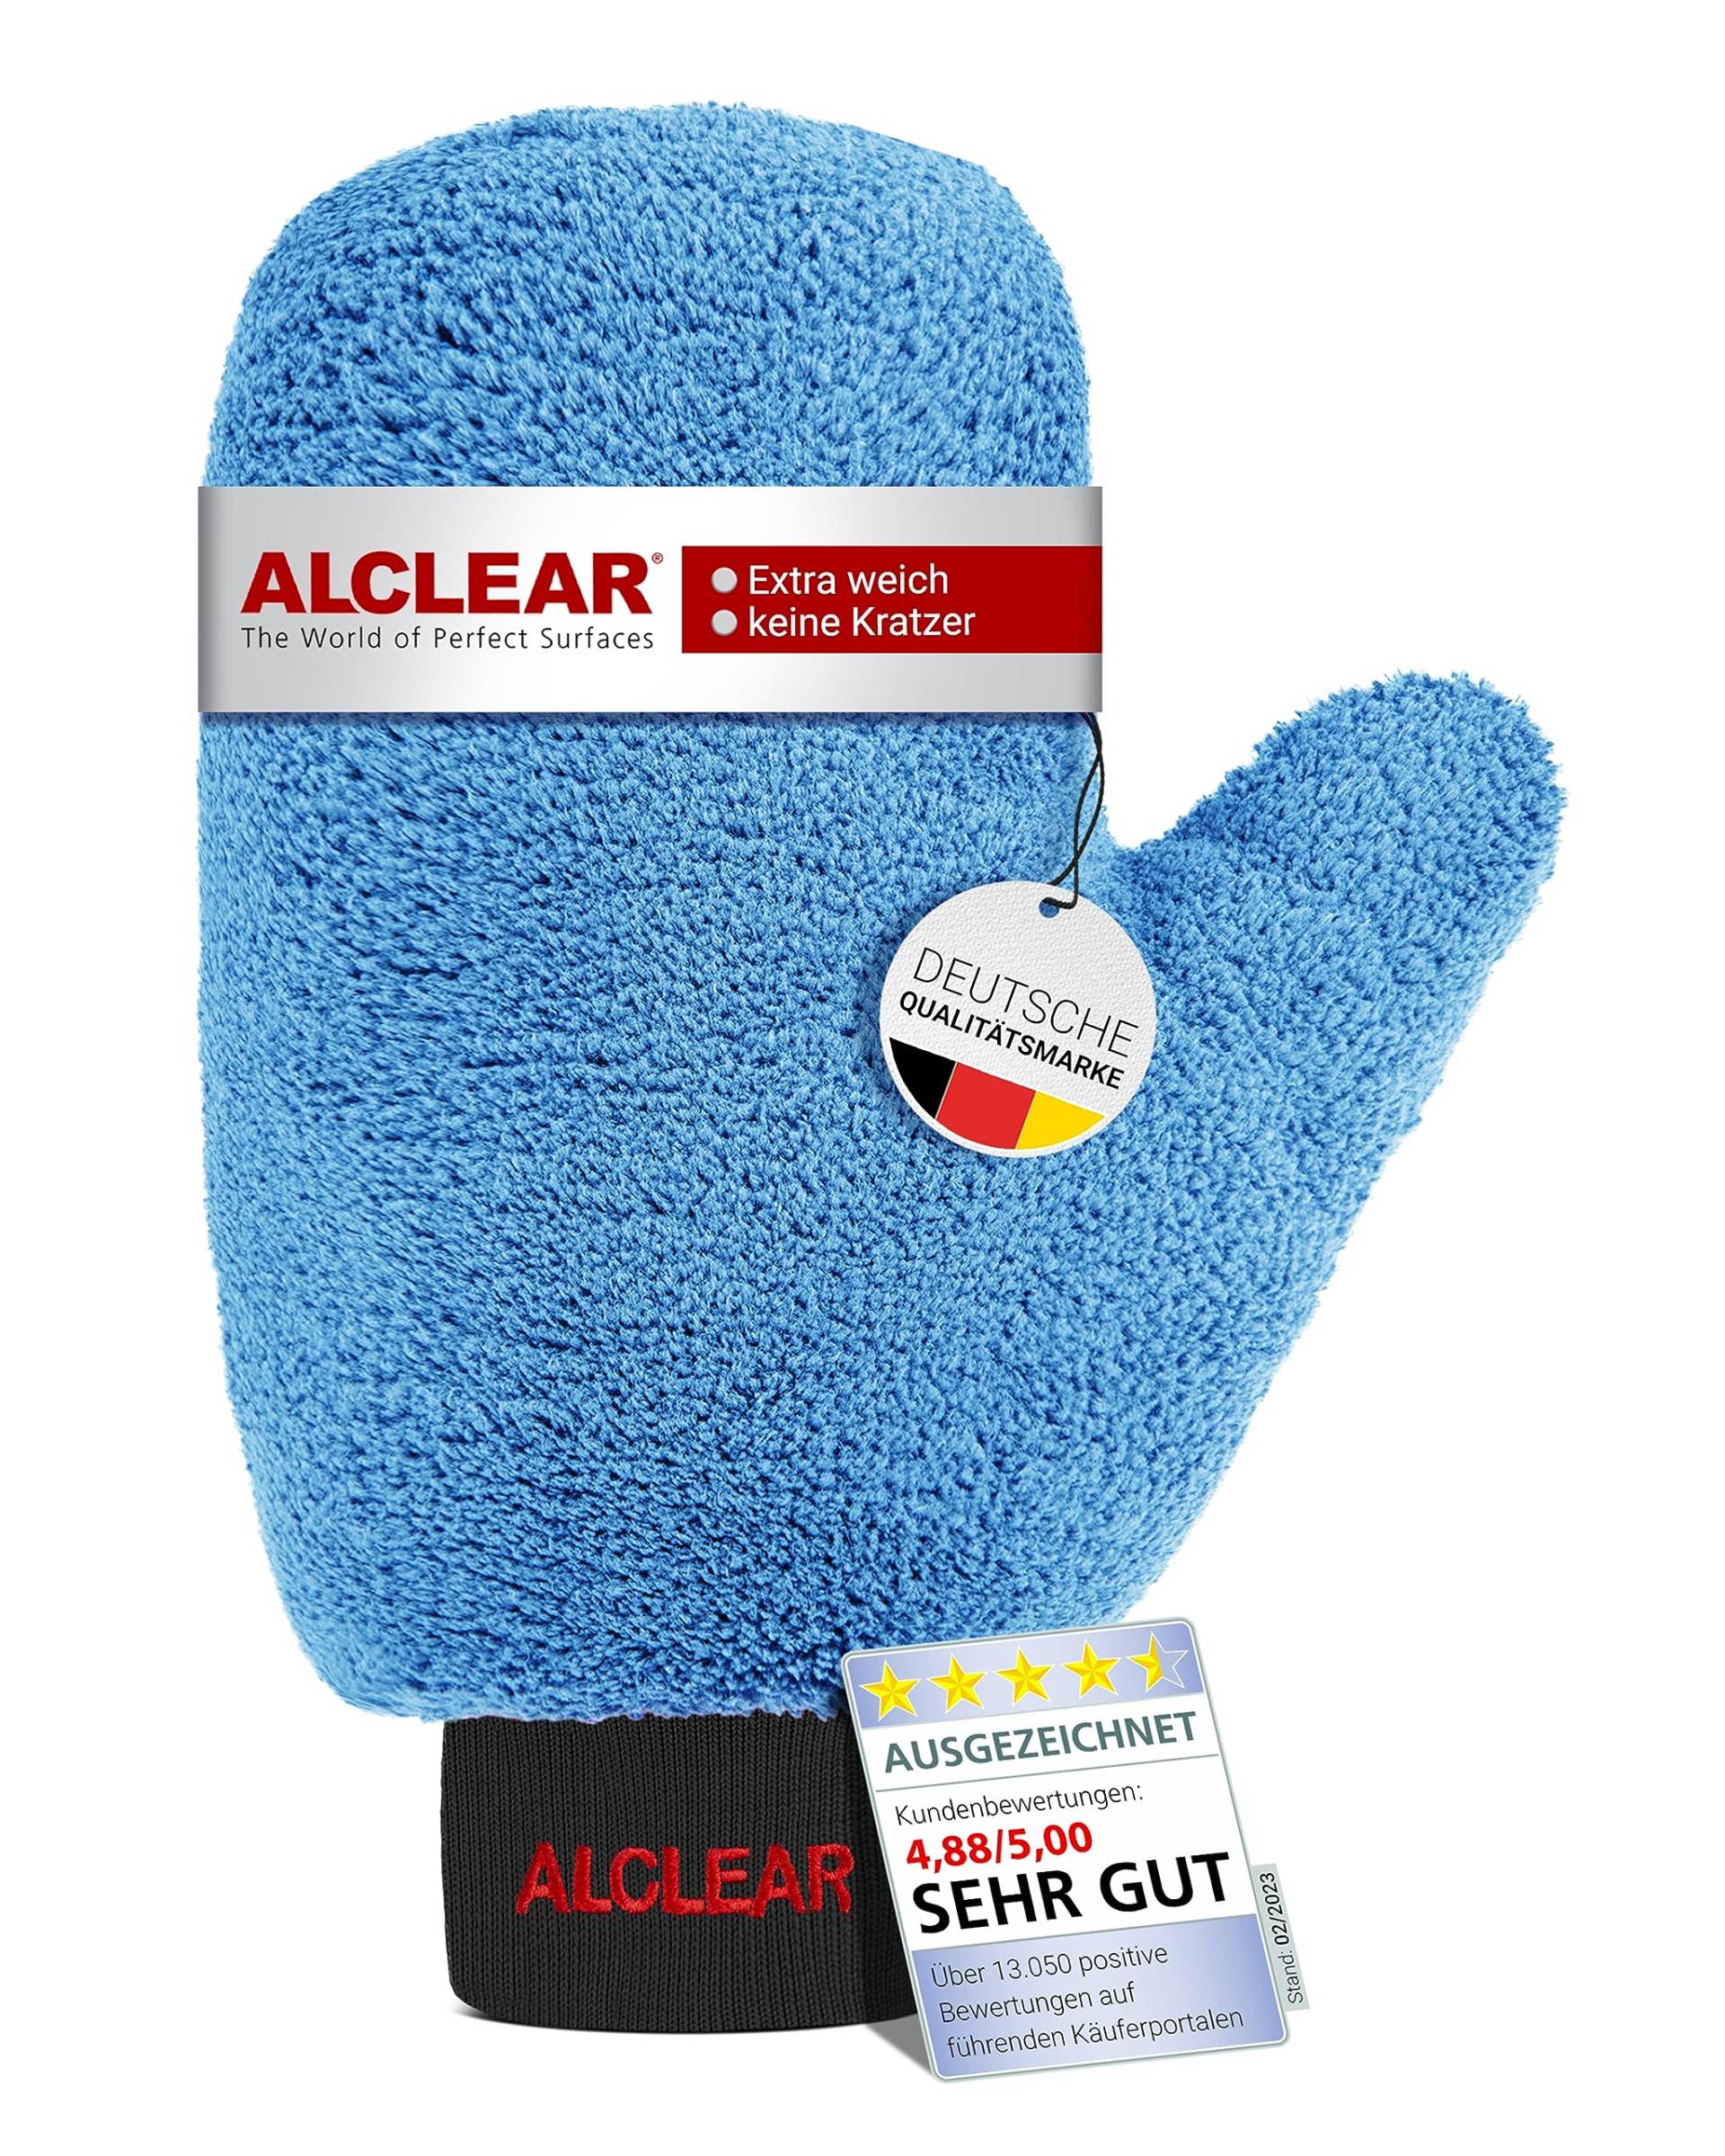 ALCLEAR Felgen Waschhandschuh Auto - Premium Felgenhandschuh für professionelle Autopflege - 100% Schmutzentfernung - 26x12cm - Mikrofaser Auto Waschhandschuh - Optimale Alternative zur Felgenbürste von ALCLEAR